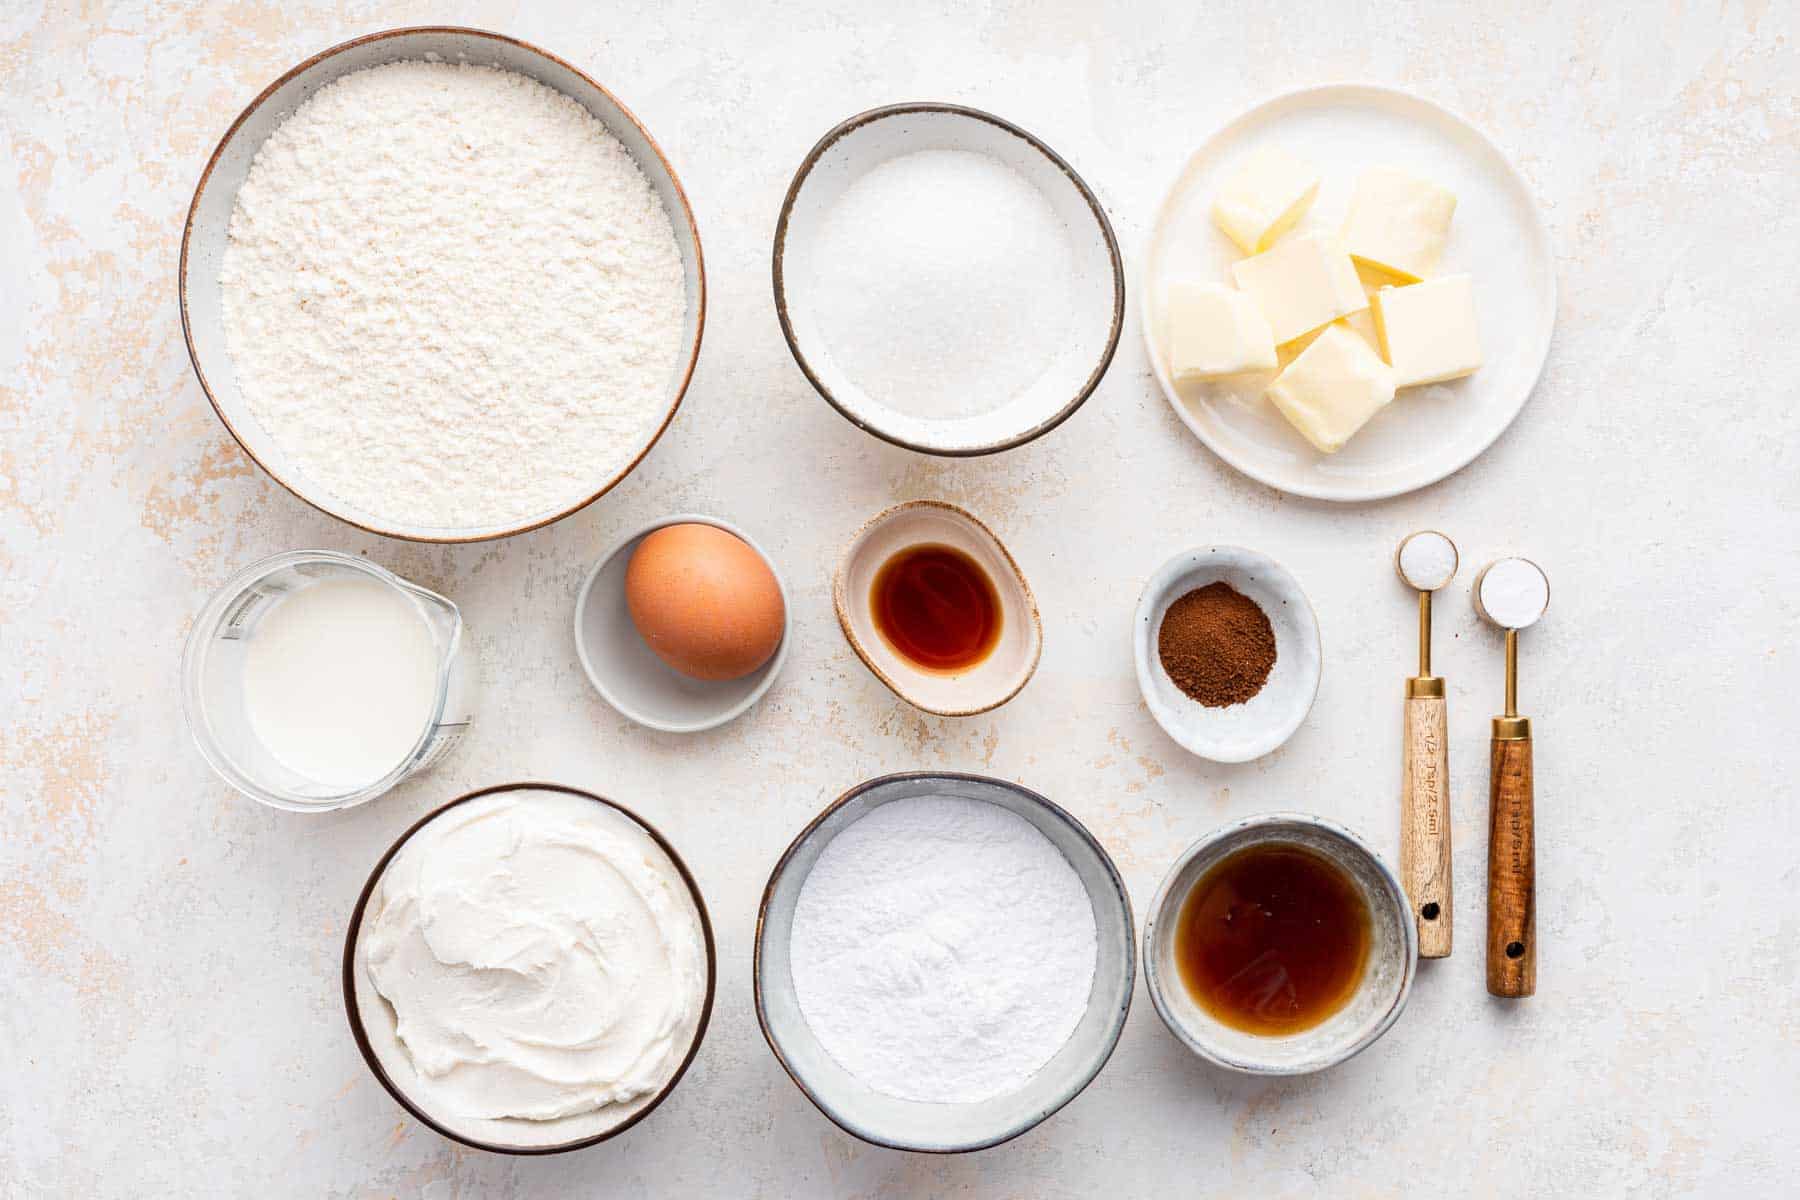 Small bowls of flour, sugar, egg, butter and espresso powder.